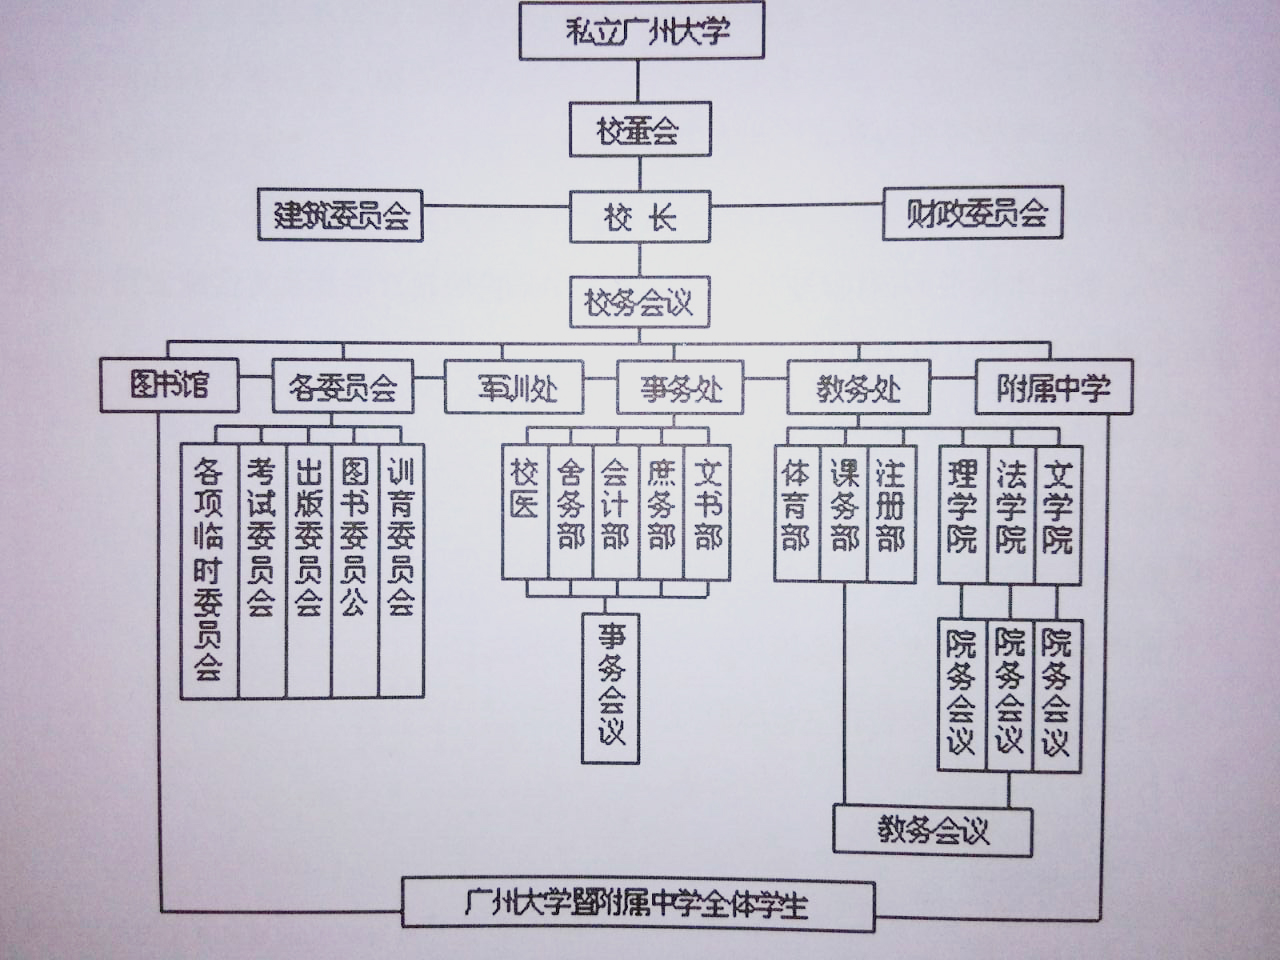 1937年私立廣州大學組織管理系統